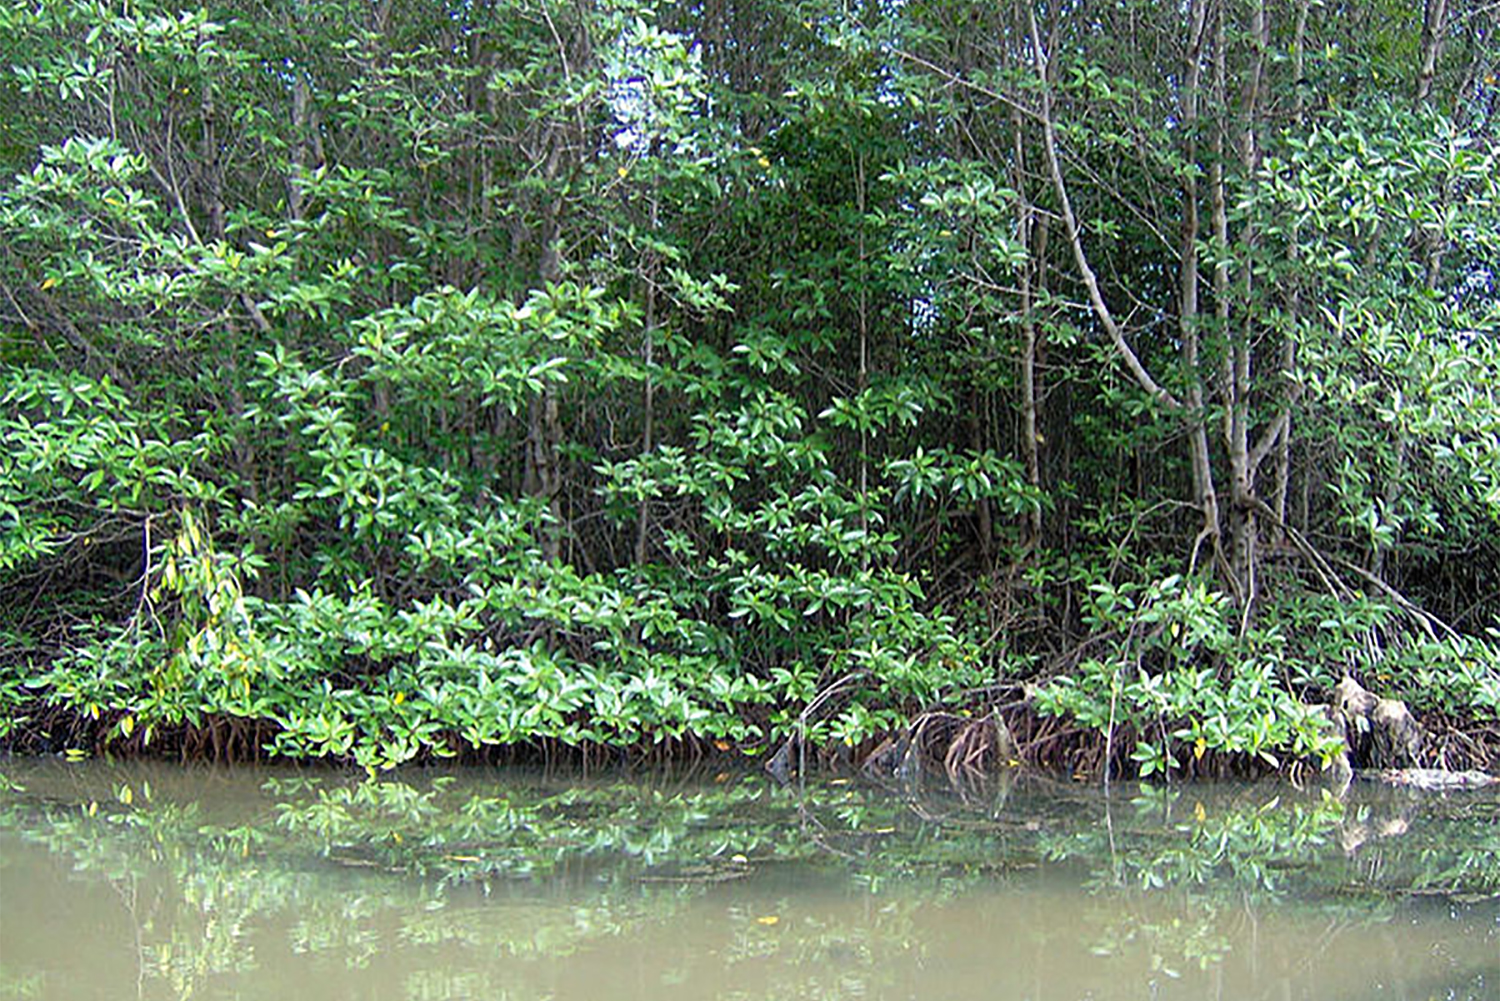 La mangrove de Can Gio, près d’Ho Chi Minh, est reconnue pour être la plus grande réserve de mollusques au monde. 